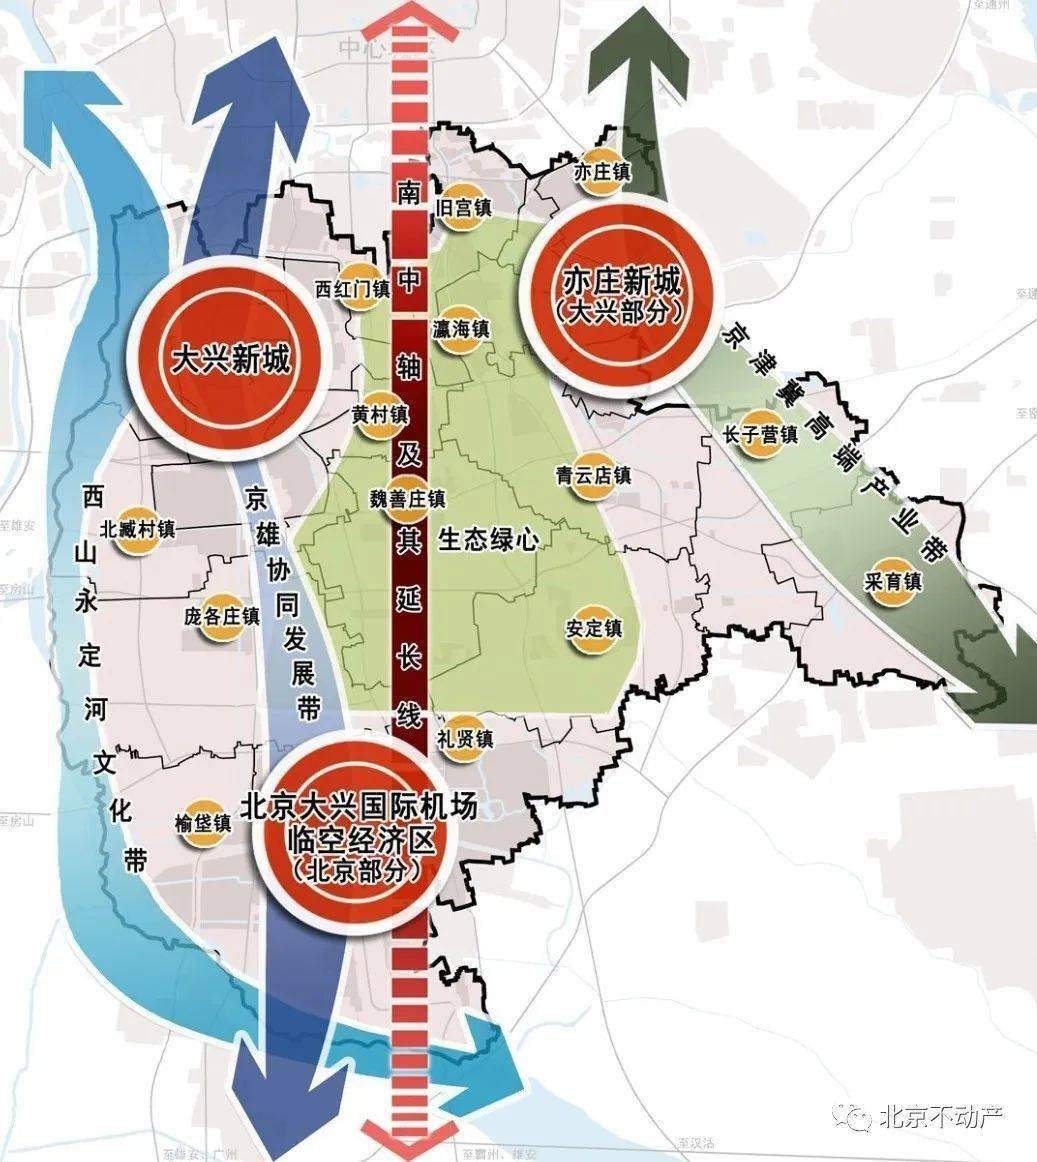 规划图 三,交通路网 项目位于亦庄总部基地中心腹地,具备"两高五轨"